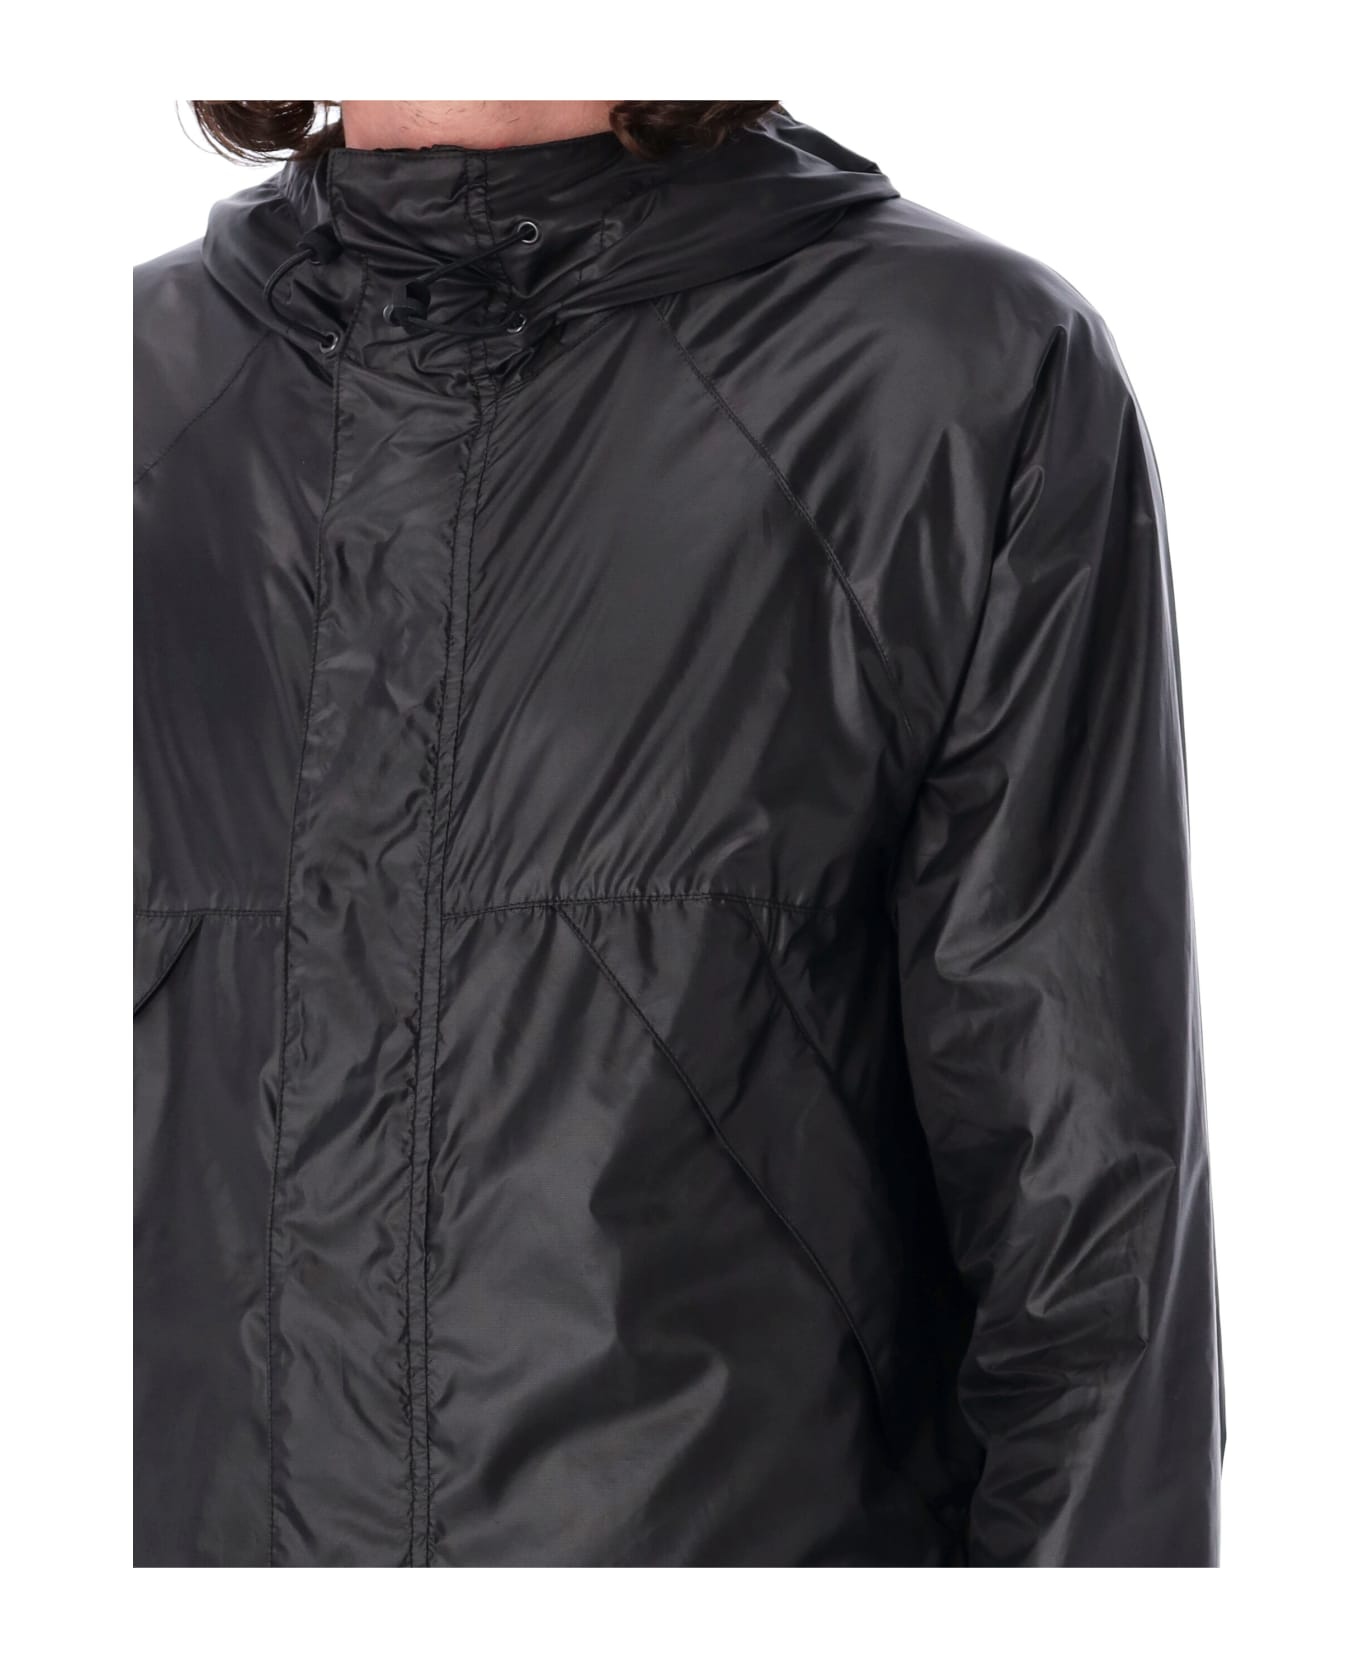 Aspesi Wintermoon Technical Jacket - Black ジャケット